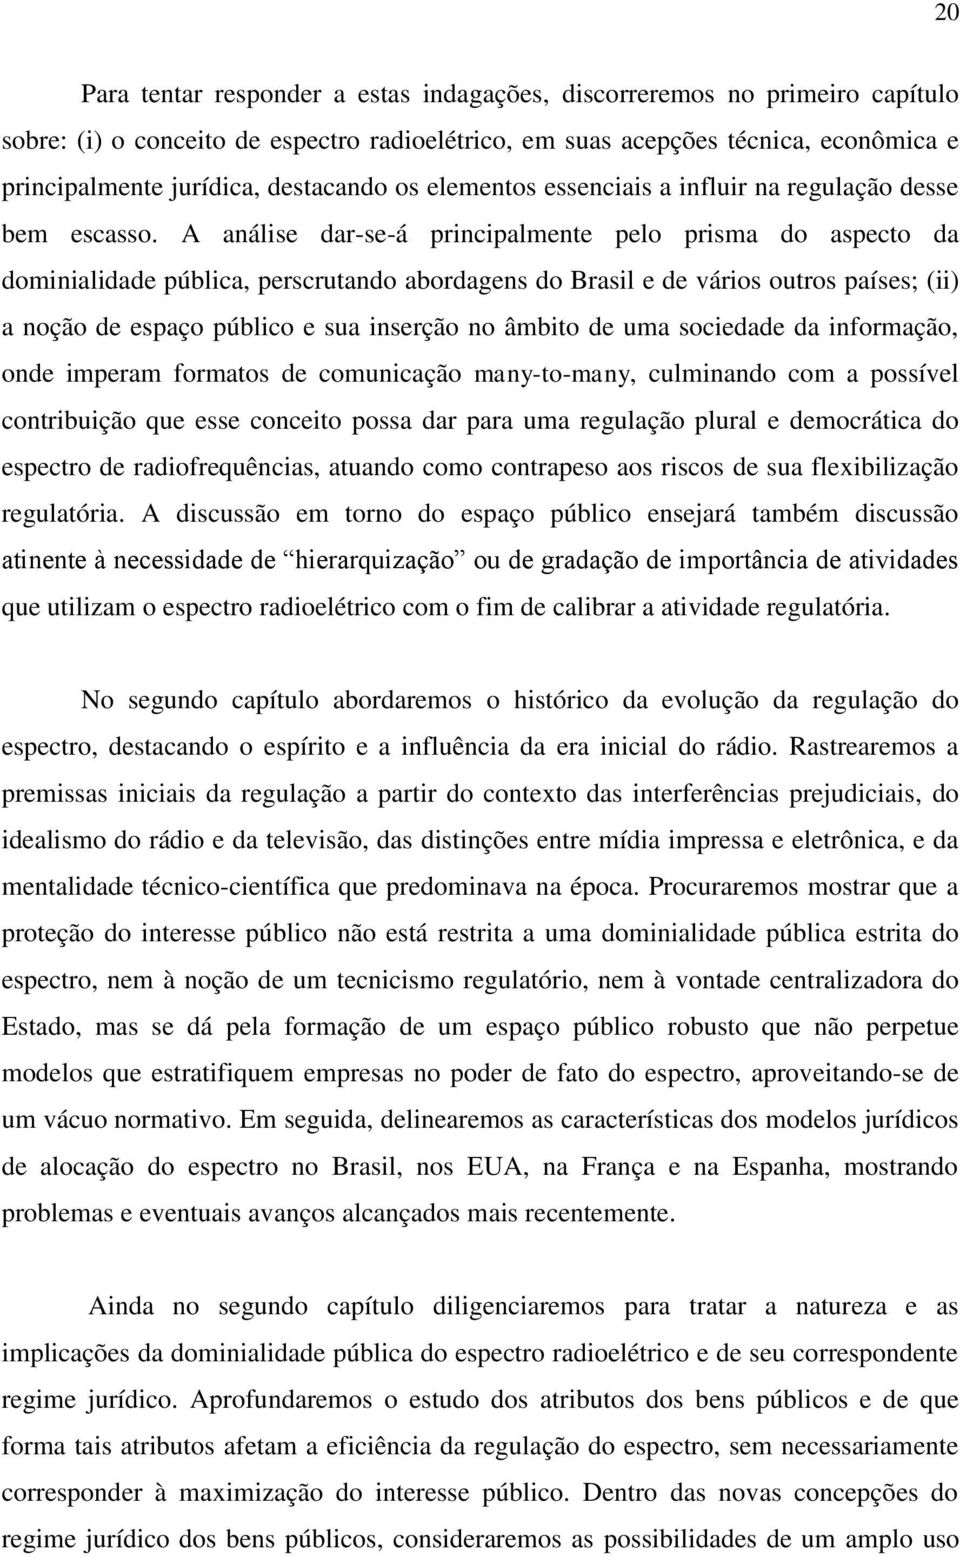 A análise dar-se-á principalmente pelo prisma do aspecto da dominialidade pública, perscrutando abordagens do Brasil e de vários outros países; (ii) a noção de espaço público e sua inserção no âmbito